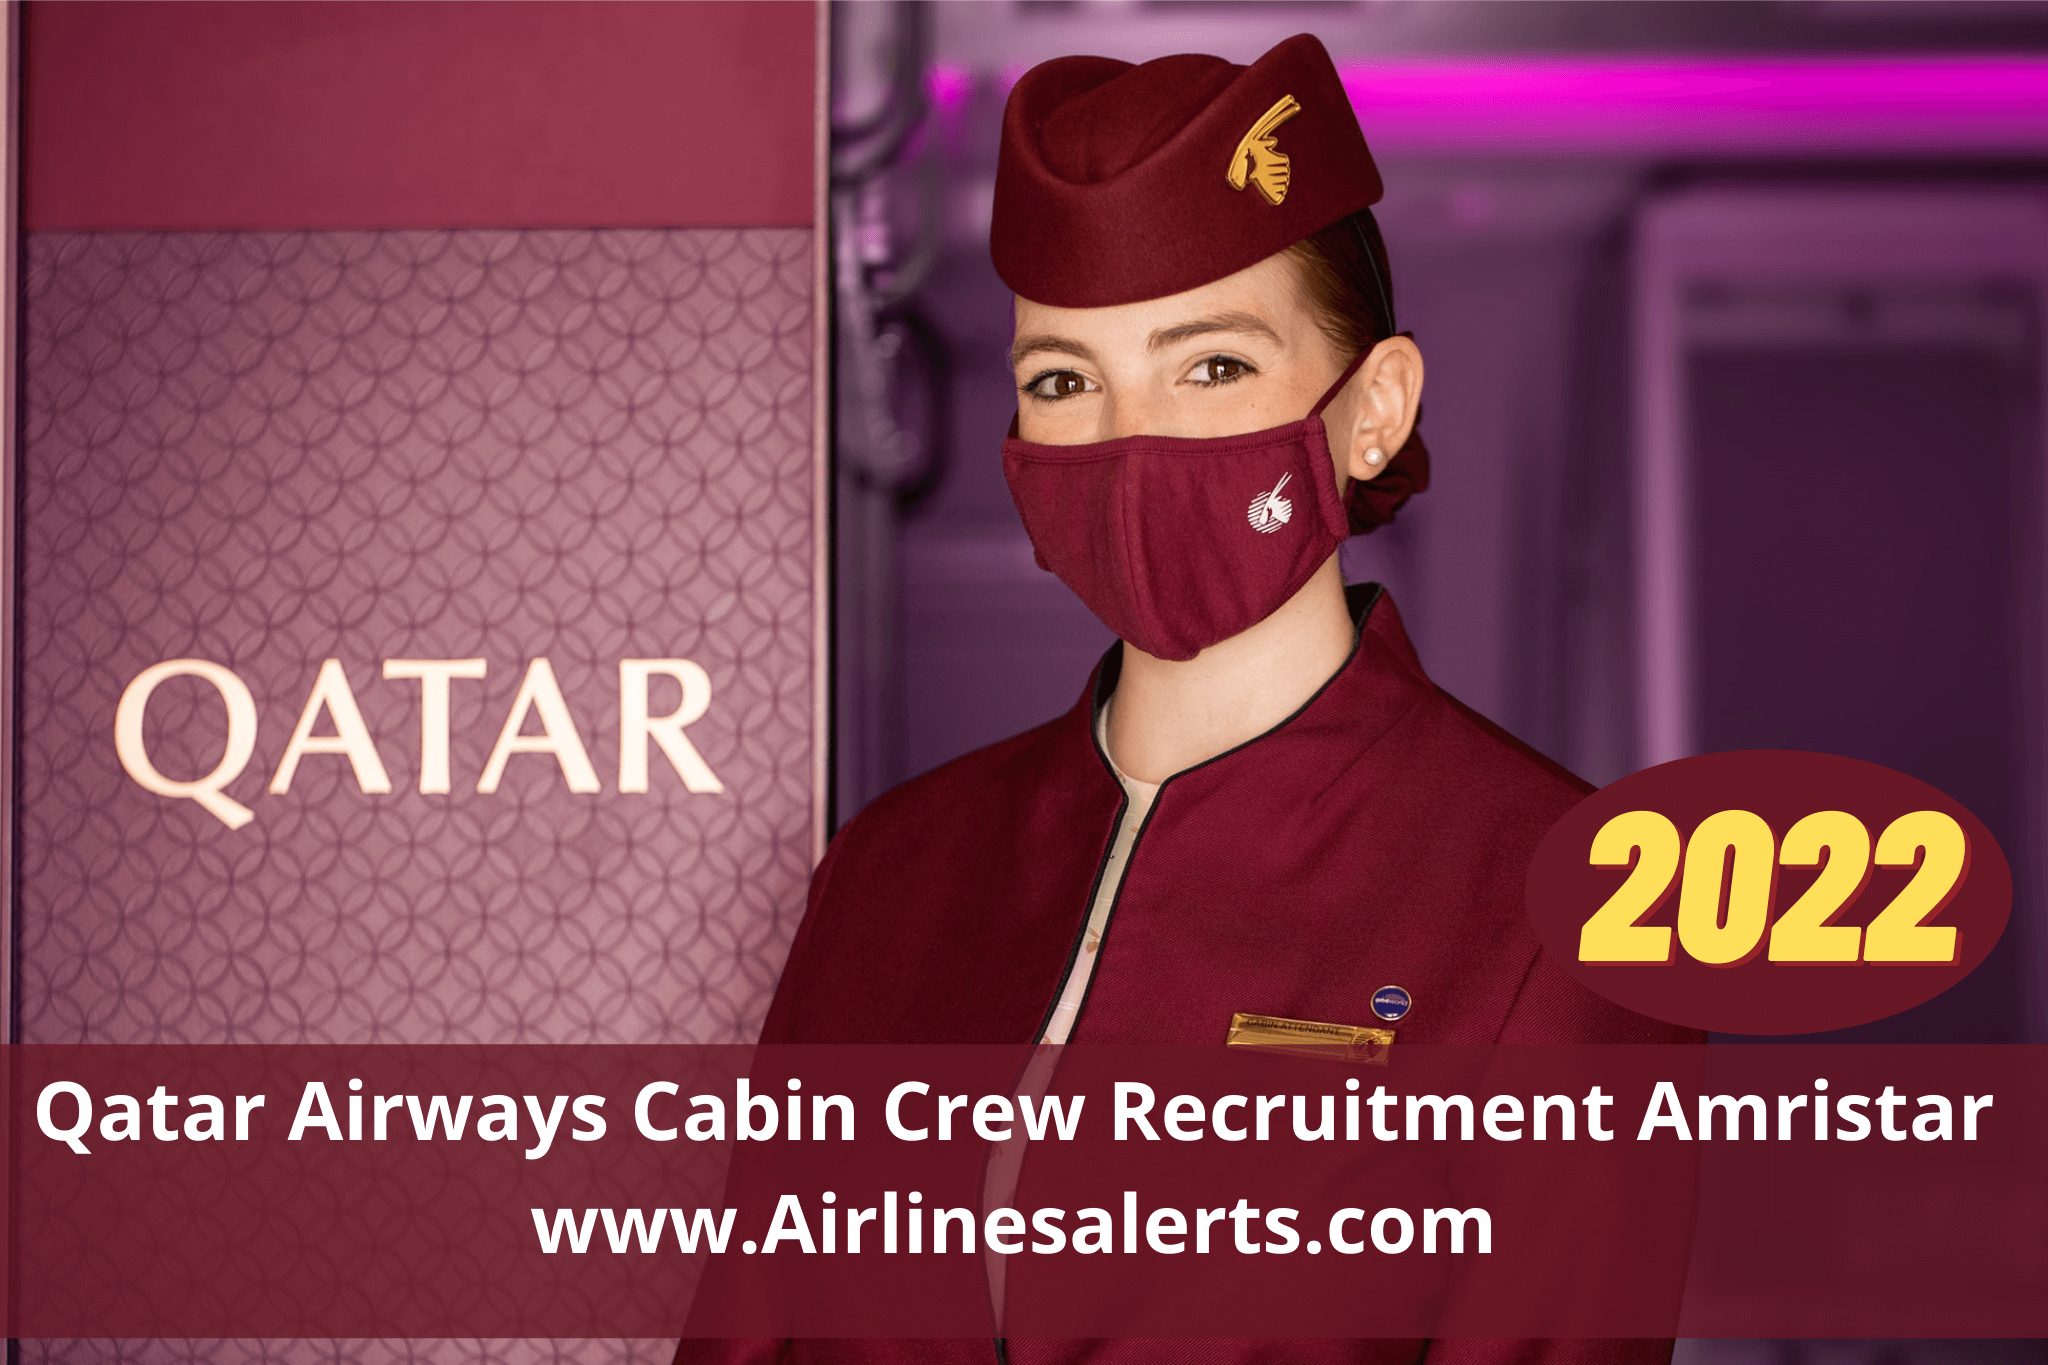 Qatar Airways Cabin Crew Recruitment Amritsar 2022 (Hiring Now) Apply Online 